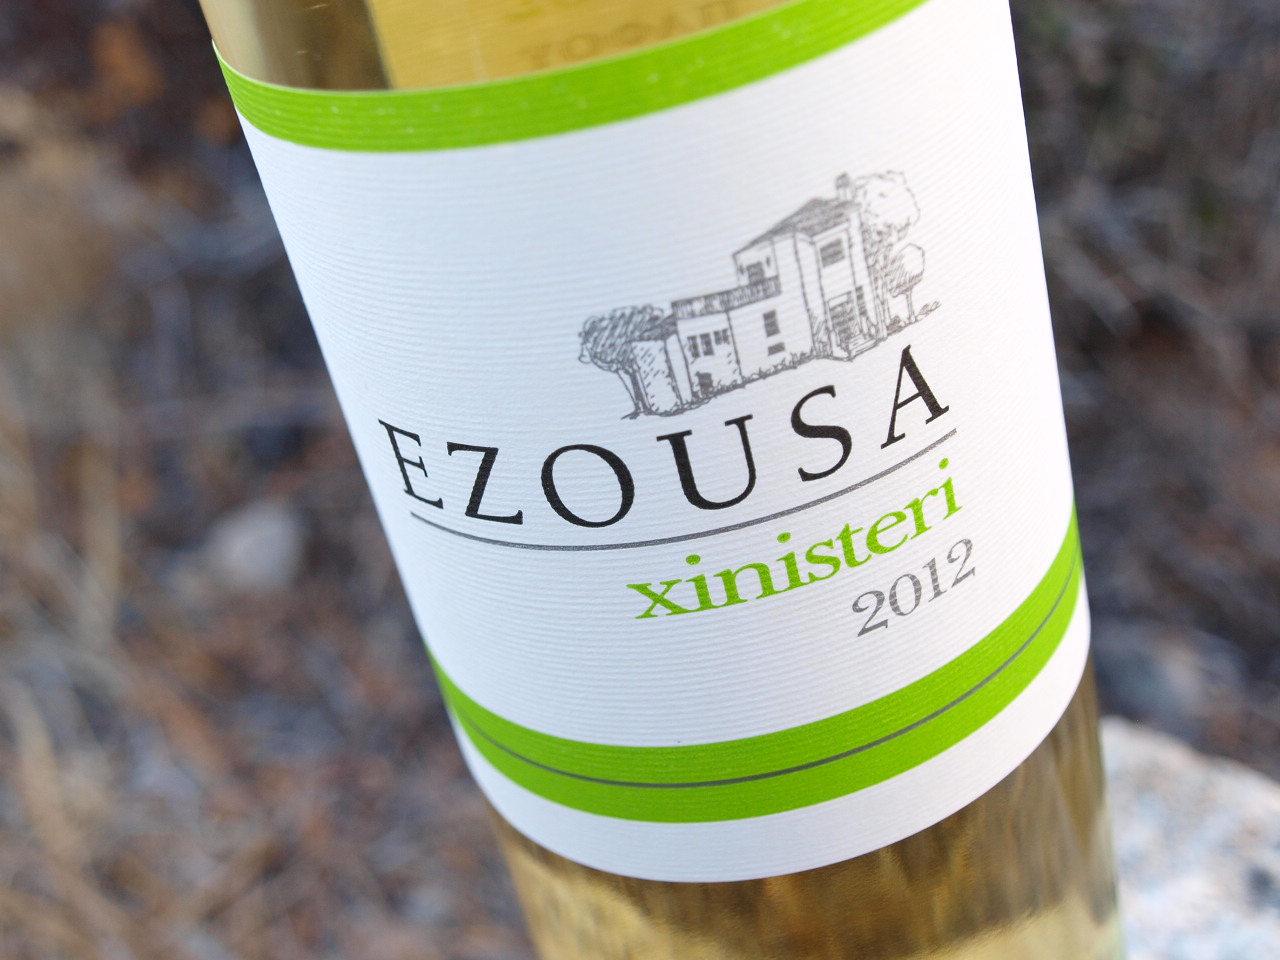 Ezousa Winery Xynisteri 2012 Cyprus White Wine